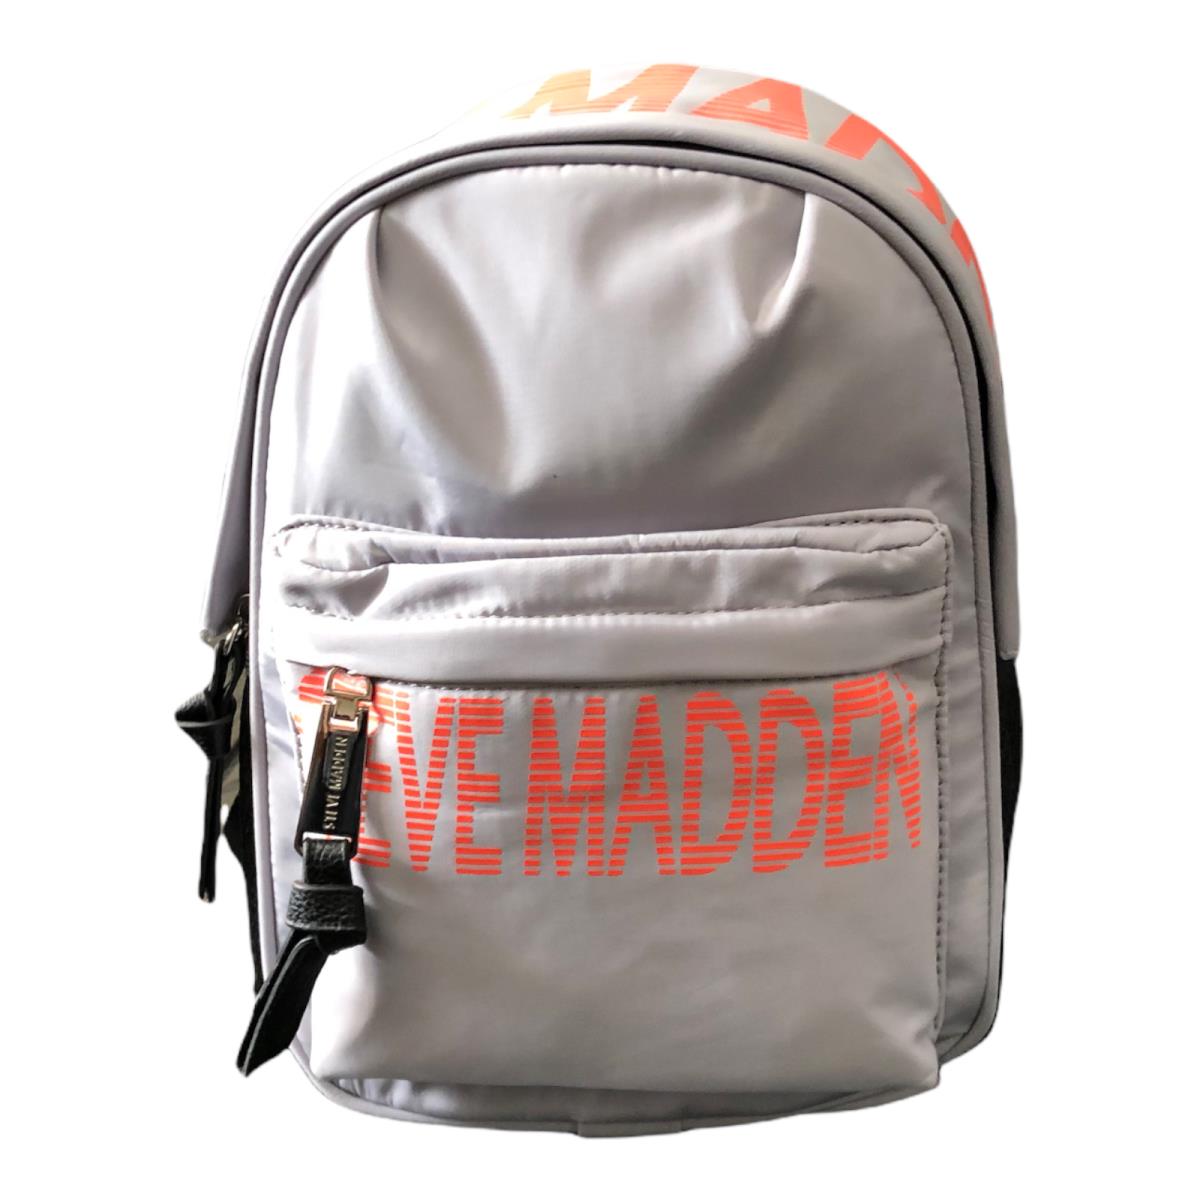 Steve Madden Force Womens Mini Backpack - Lining: White, Exterior: Gray